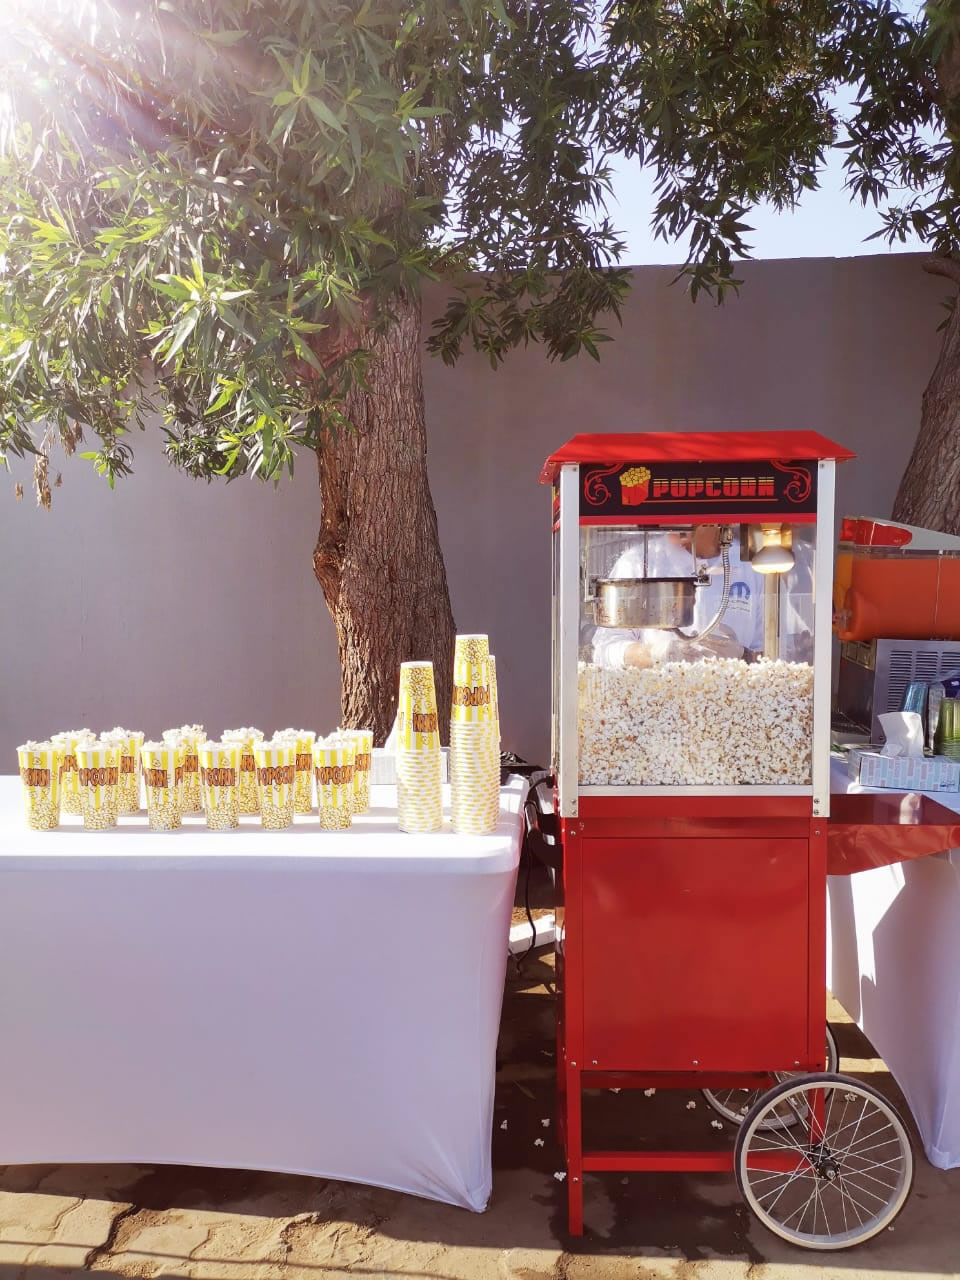 EQHDD Popcorn Machine Set Up